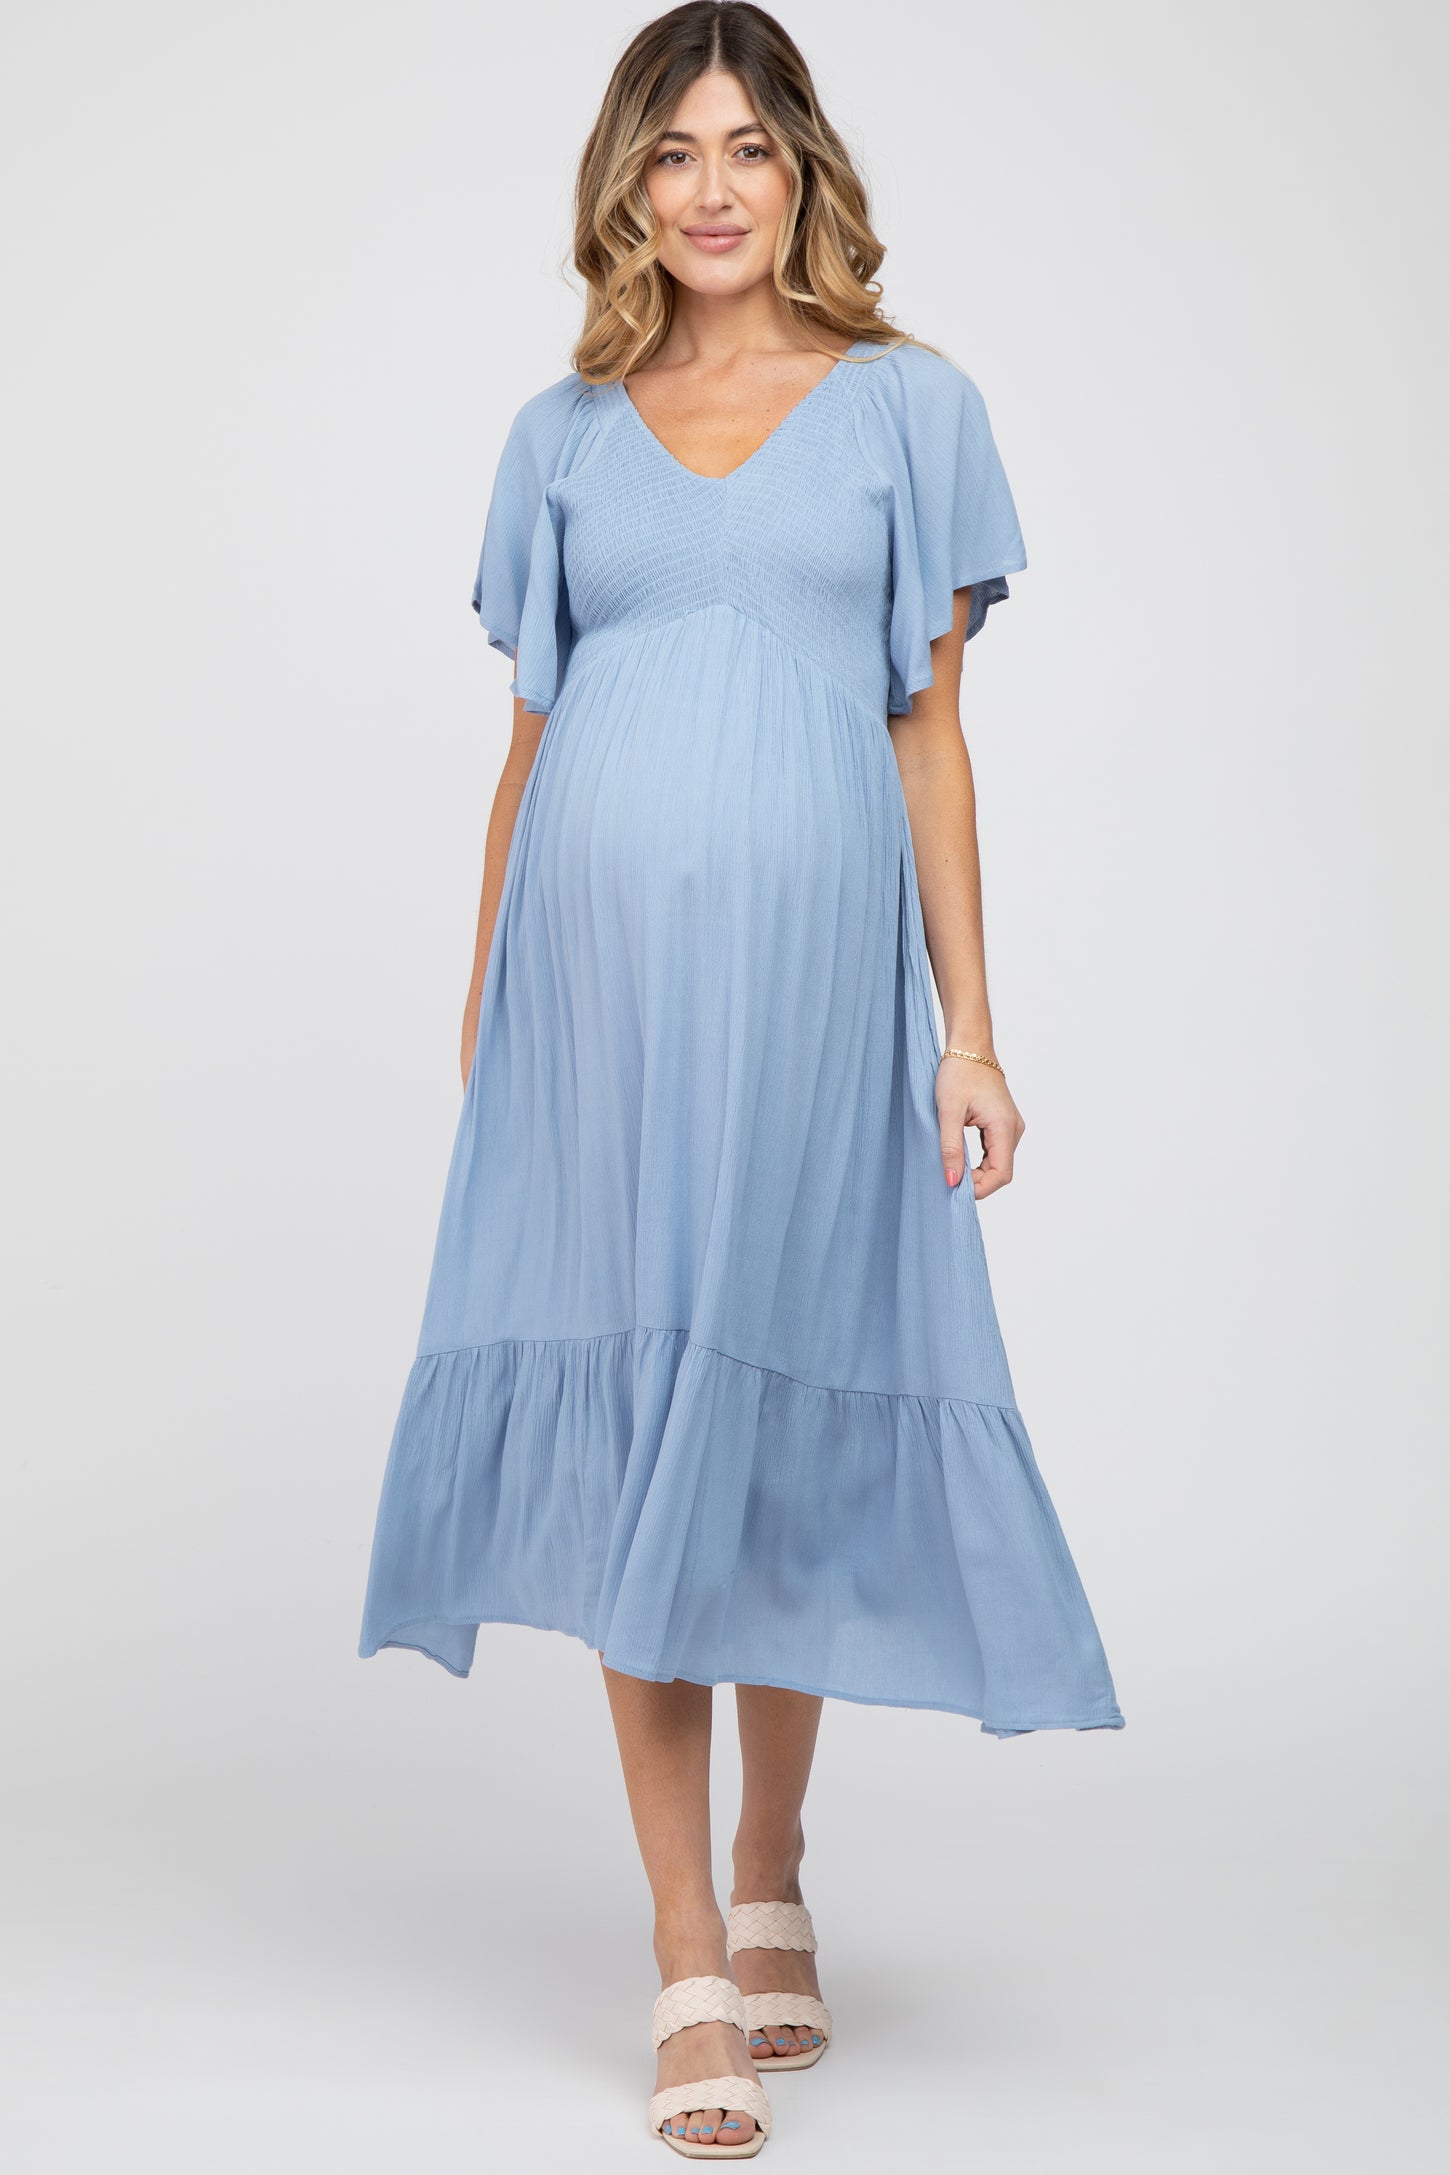 Blue Smocked Ruffle Maternity Dress– PinkBlush